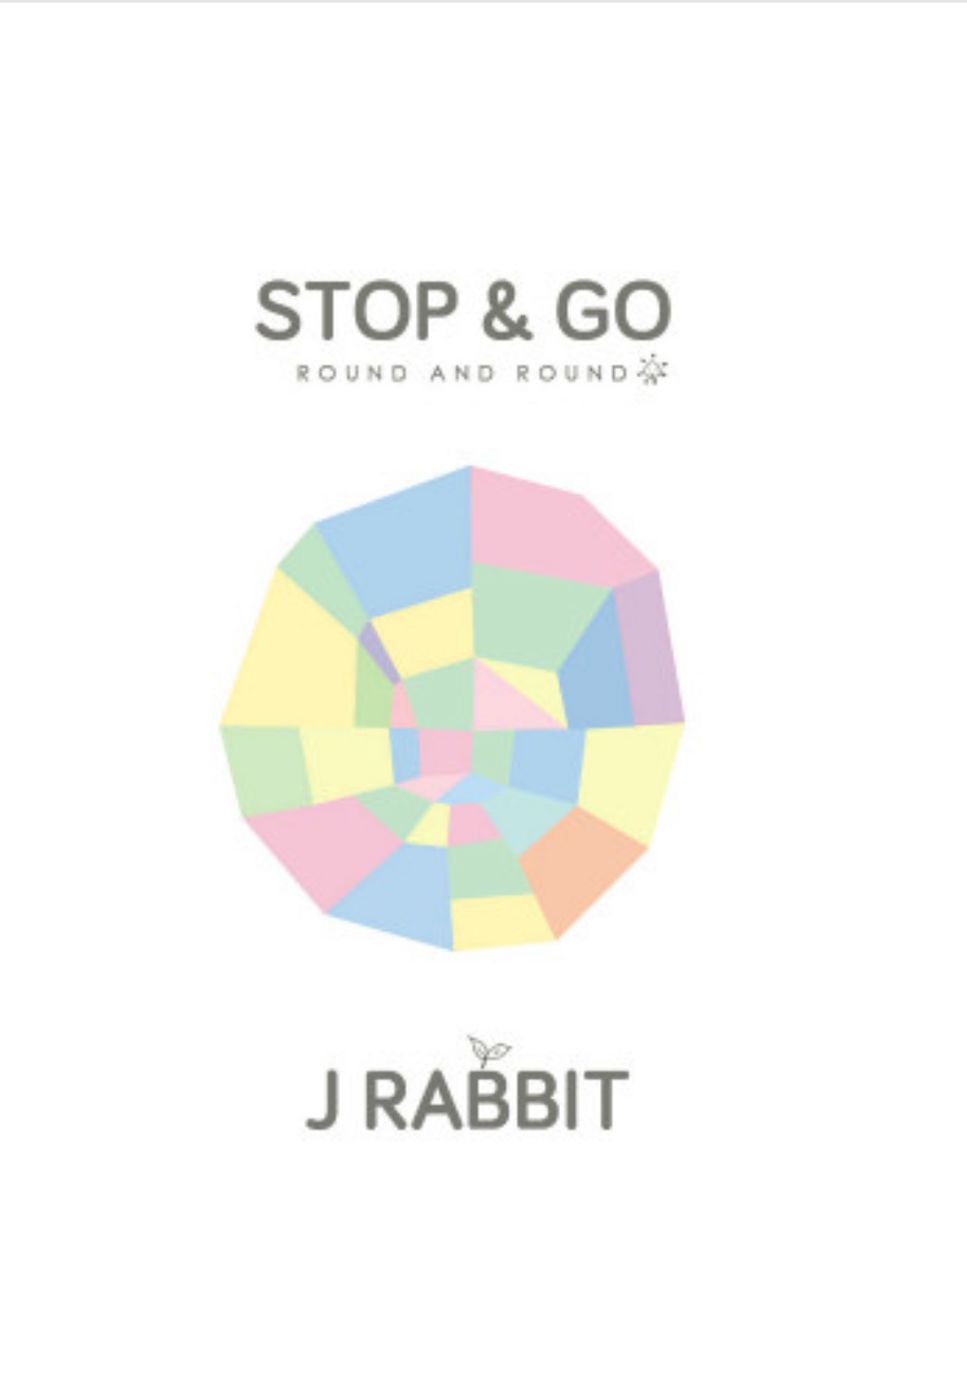 J Rabbit(제이레빗) - Romantic Travel(낭만여행) by PIANOSUMM